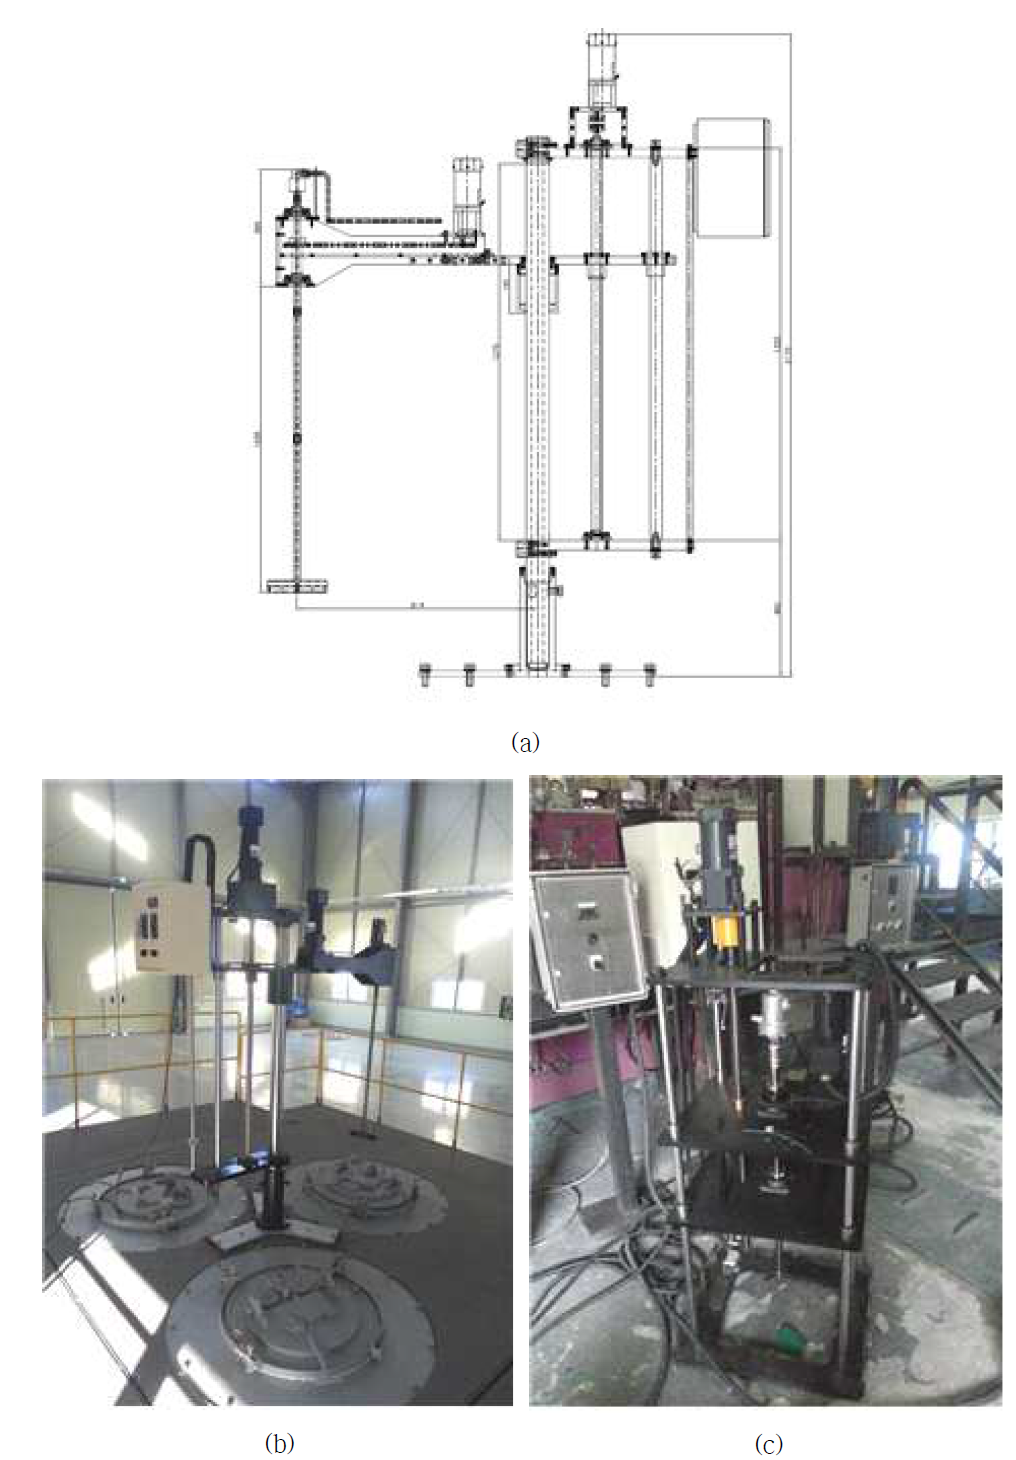 실증설비용 용탕 교반설비: (a) 회전형 교반설비 설계도면, (b) 제작된 회전형 교반설 비, (b) 이동형 교반설비